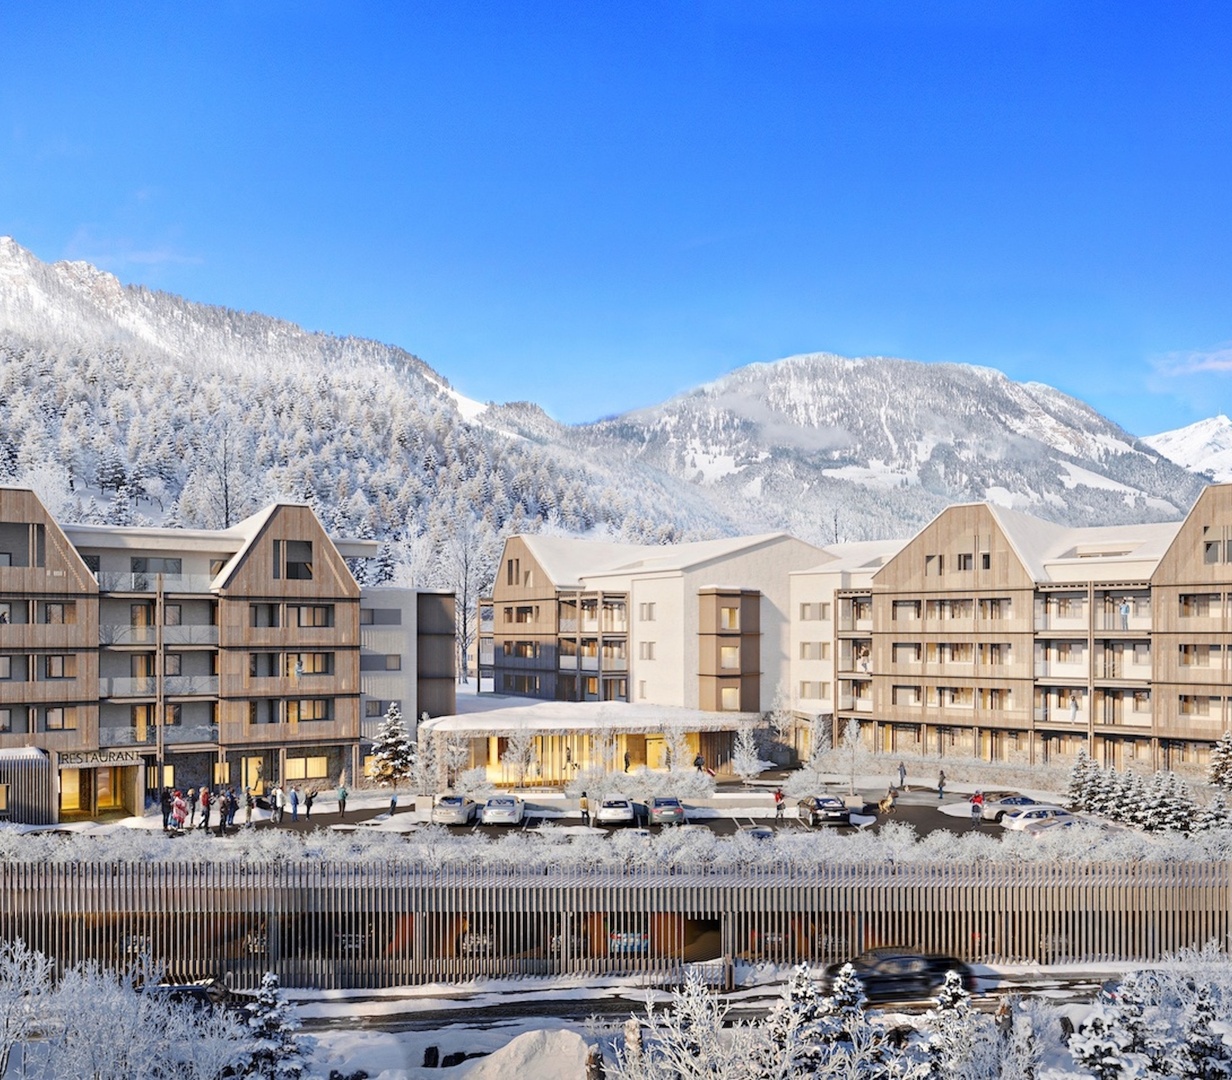 Moderní byty přímo u sjezdovky v rakouských Alpách - Tyrolsku